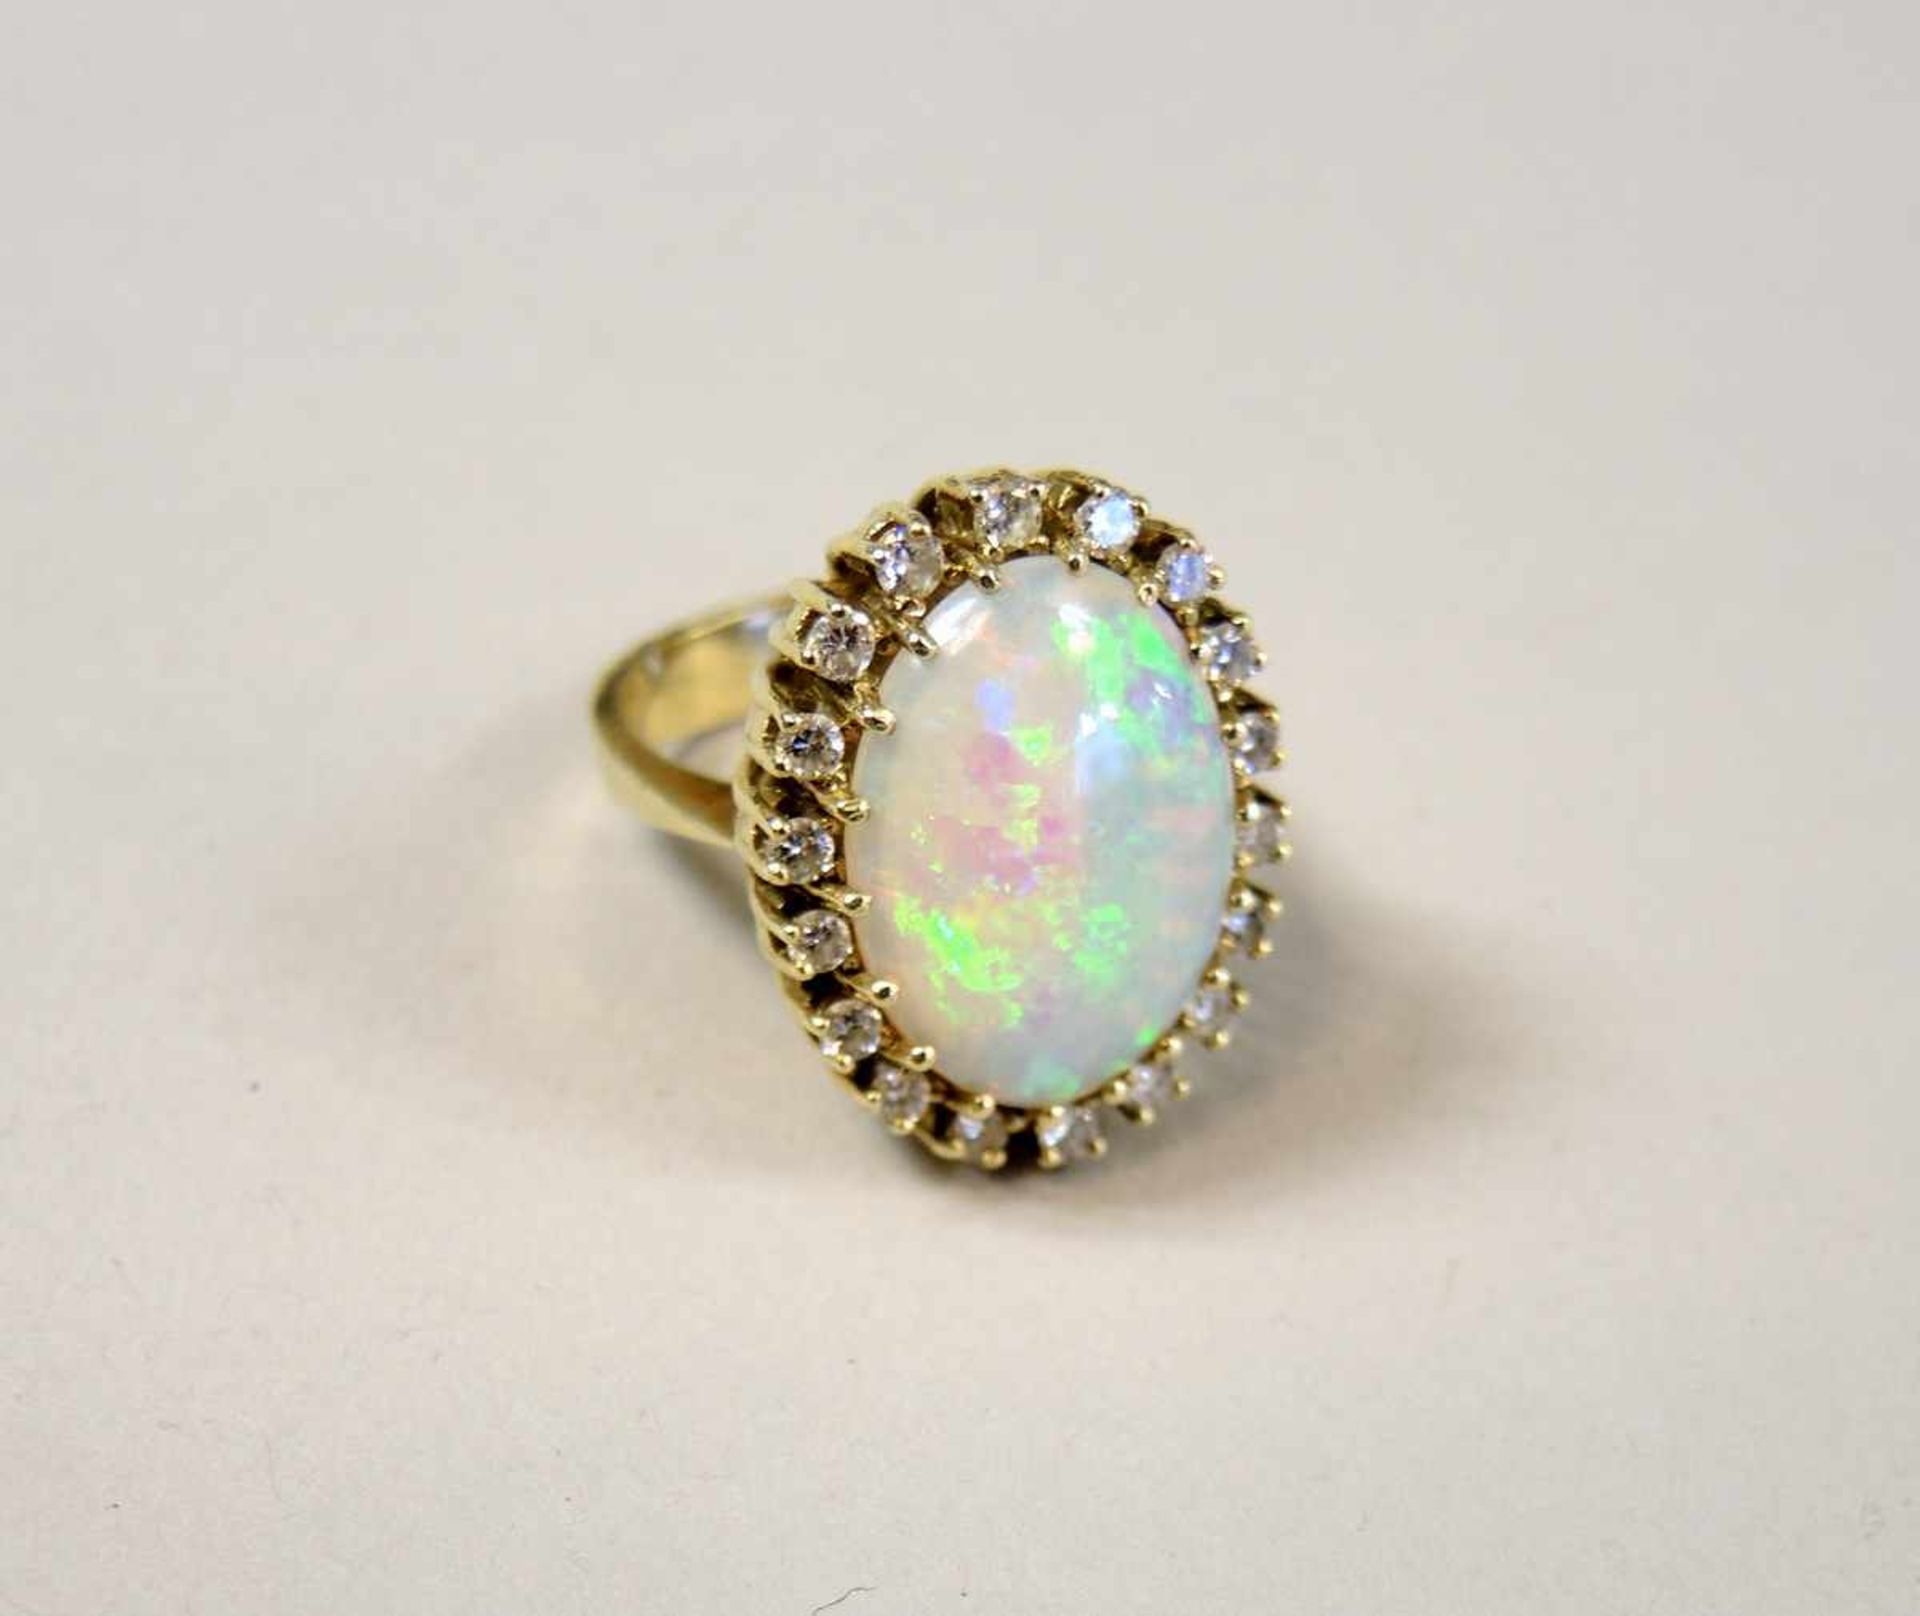 Opal-Ring 14 kt Gelbgold, mit Brillantkranz von ca. 0,50 ct. und einem Opal von ca. 5 ct. Soweit